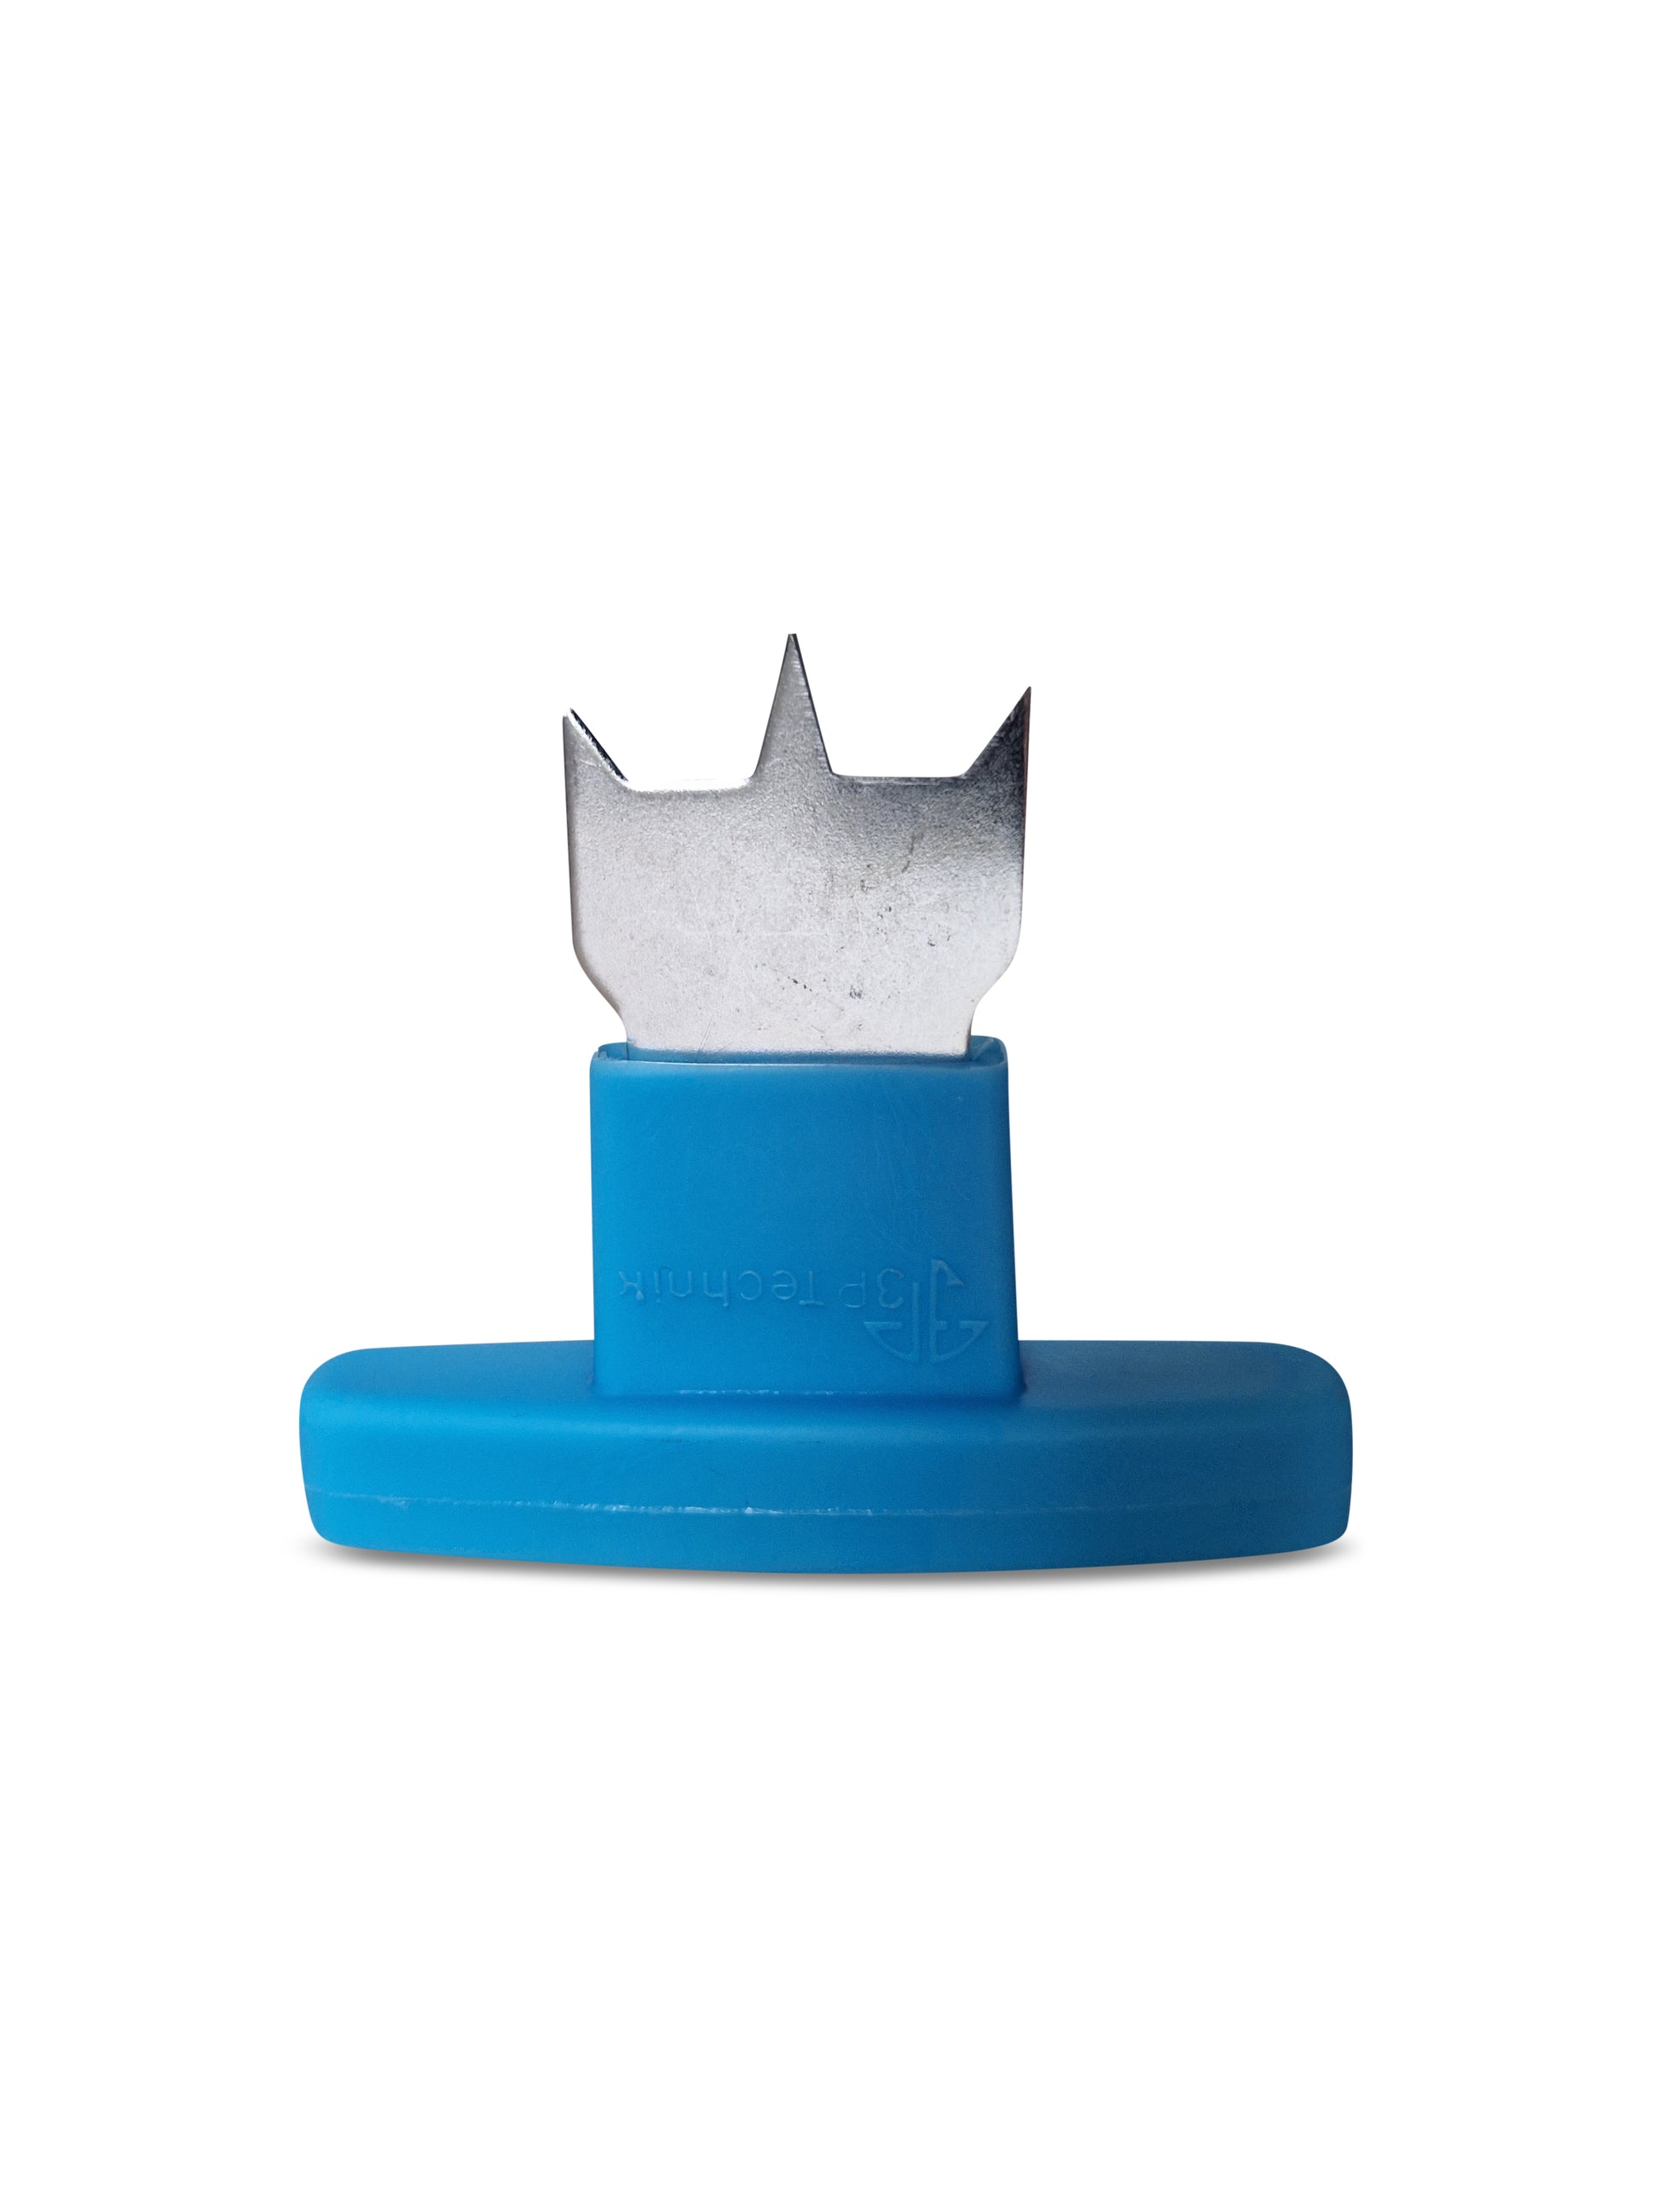 Ein blau-silberner Klebebandspender in Form einer Krone, isoliert auf weißem Hintergrund mit einem yourcasa-de-Spiralschlauch-Design.